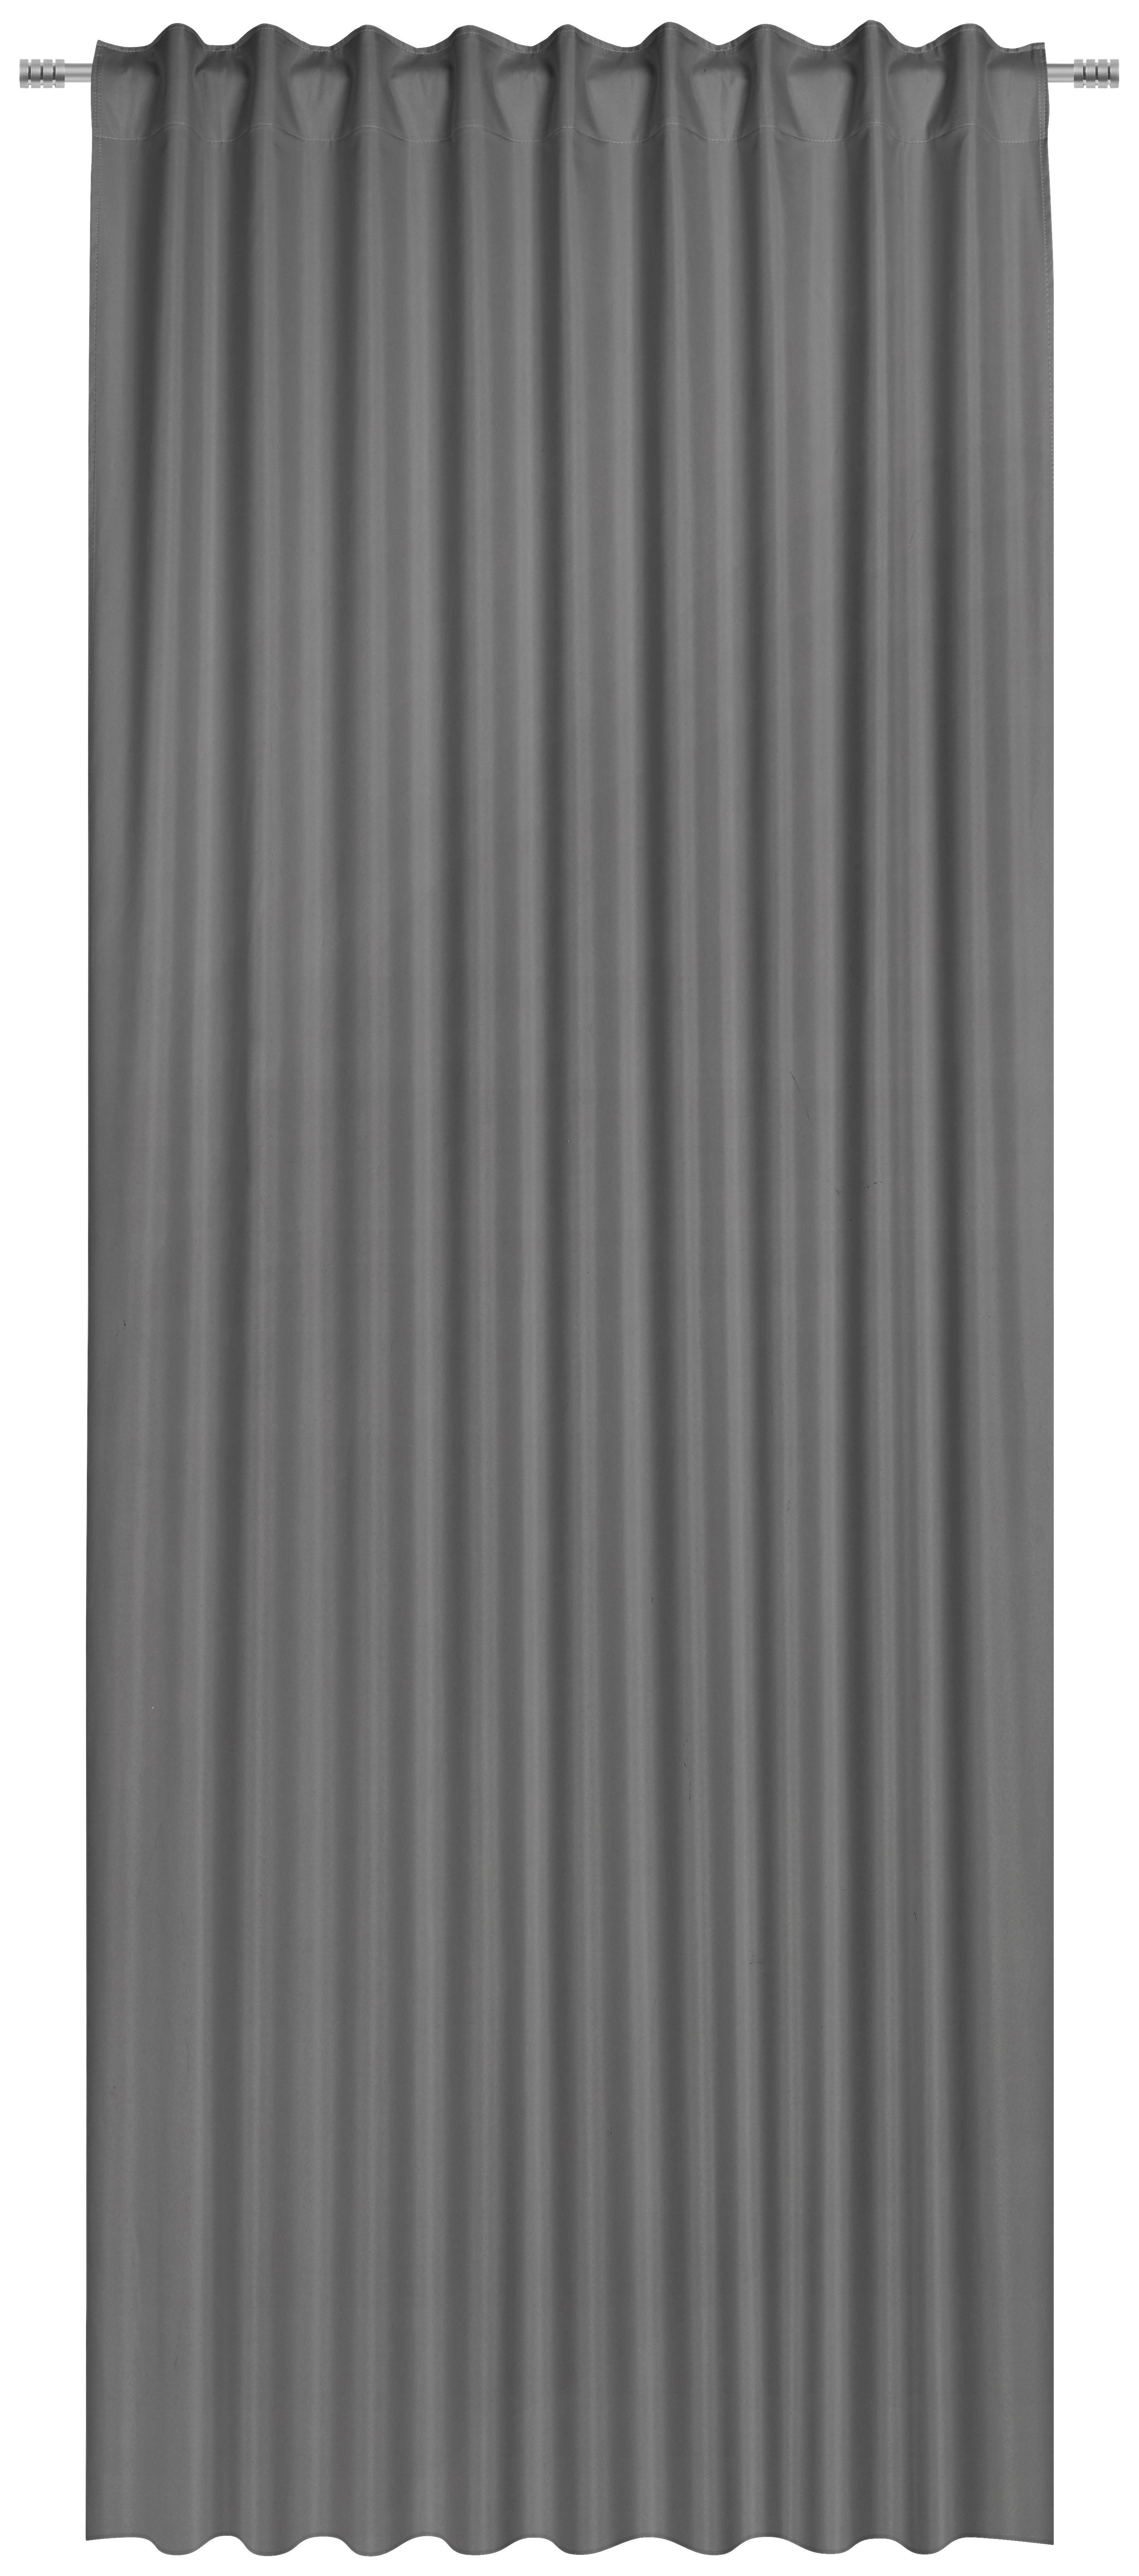 HOTOVÝ ZÁVES, black-out (neprepúšťa svetlo), 135/300 cm - sivá, Basics, textil (135/300cm) - Esposa